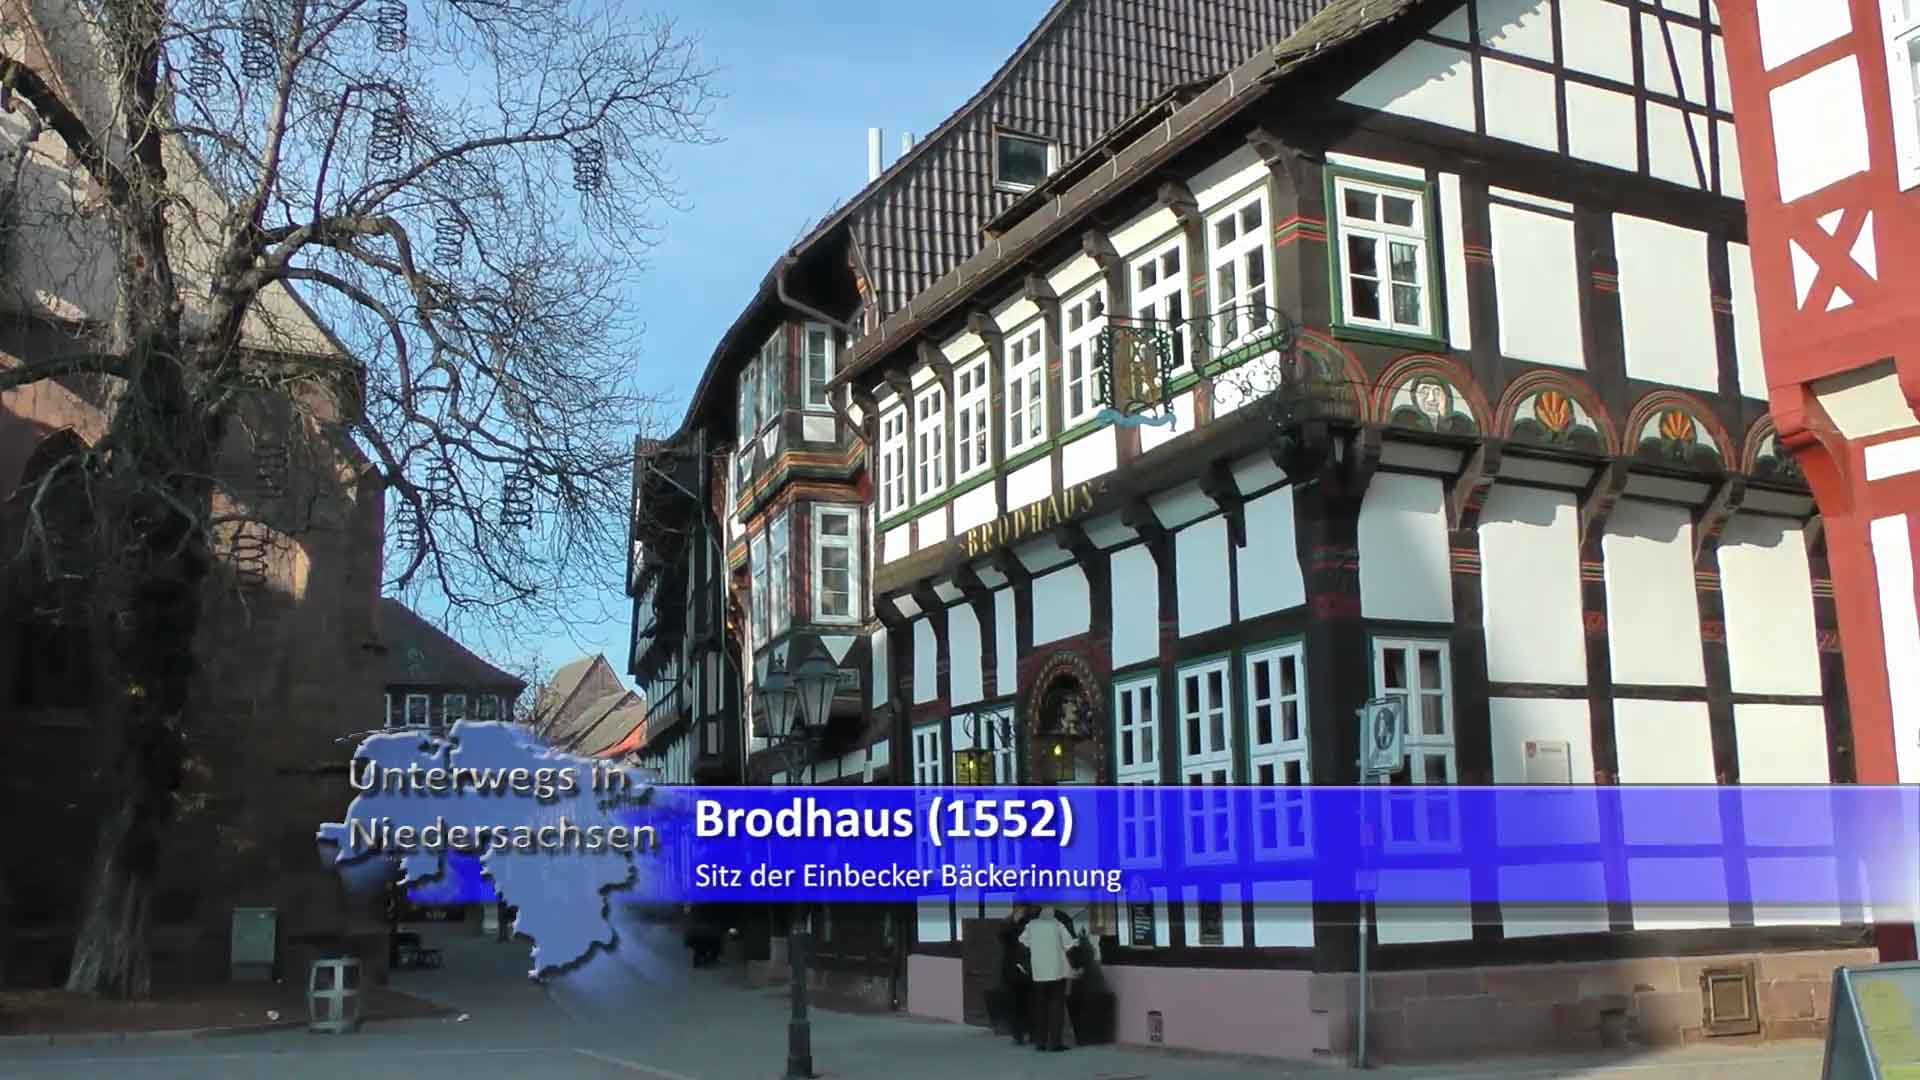 Brodhaus